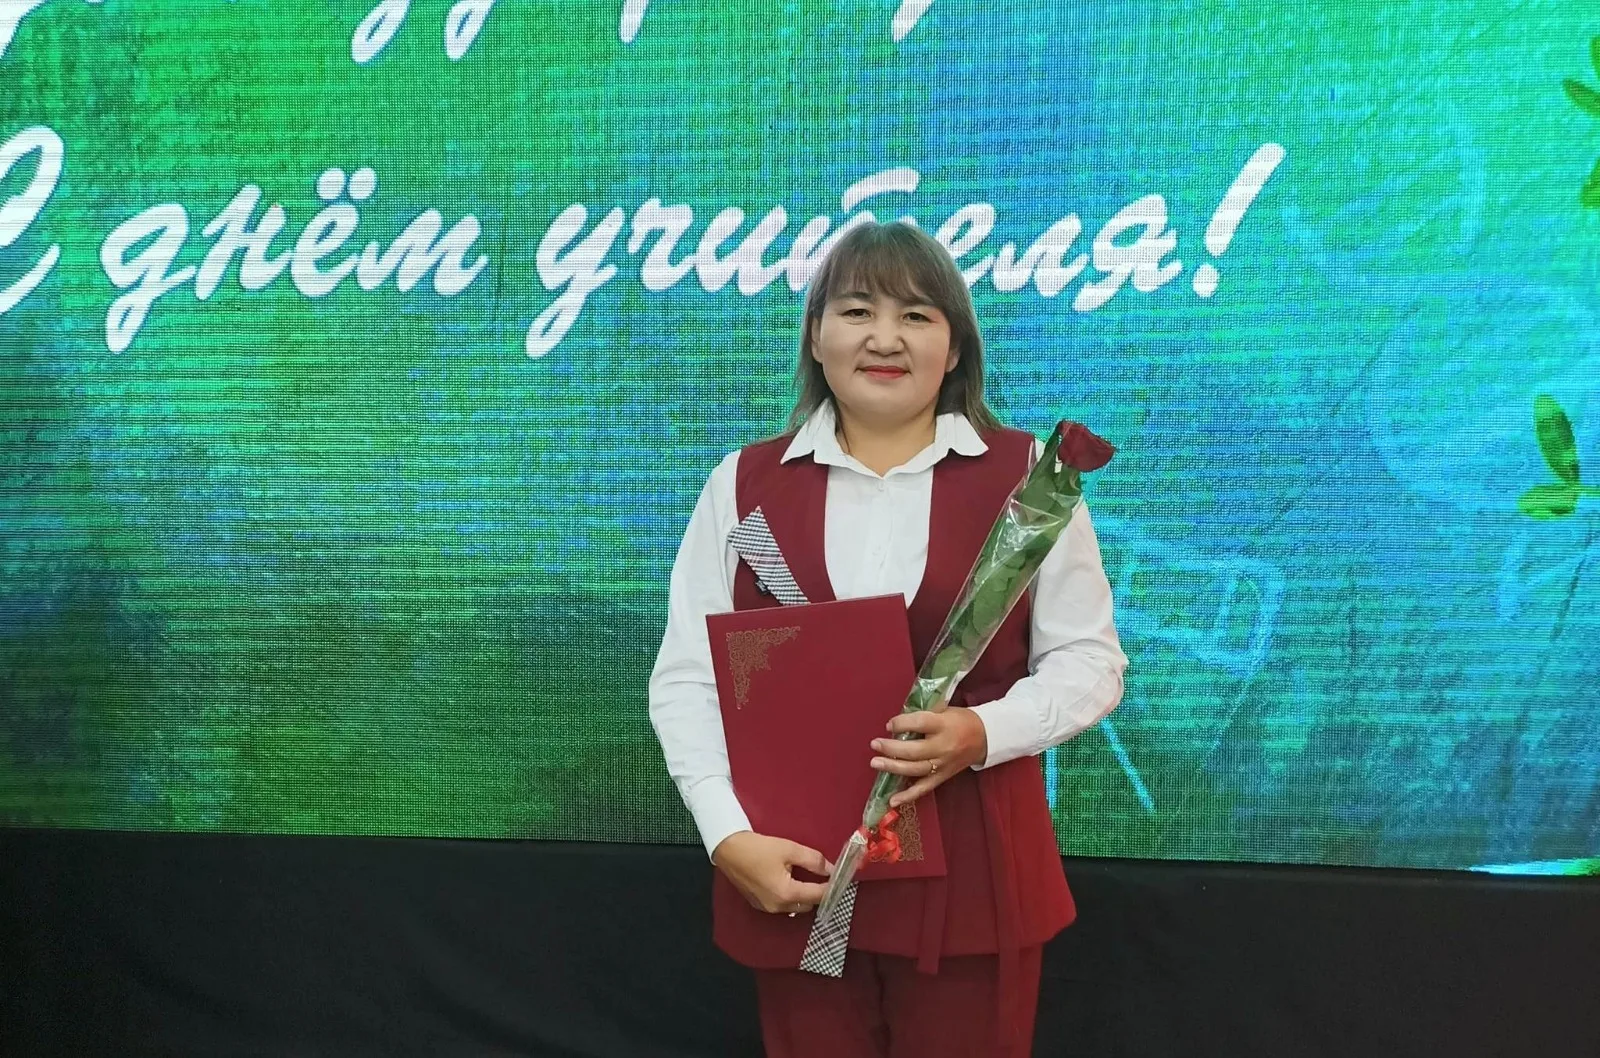 На севере Казахстана учительница открыла благотворительный бутик 							